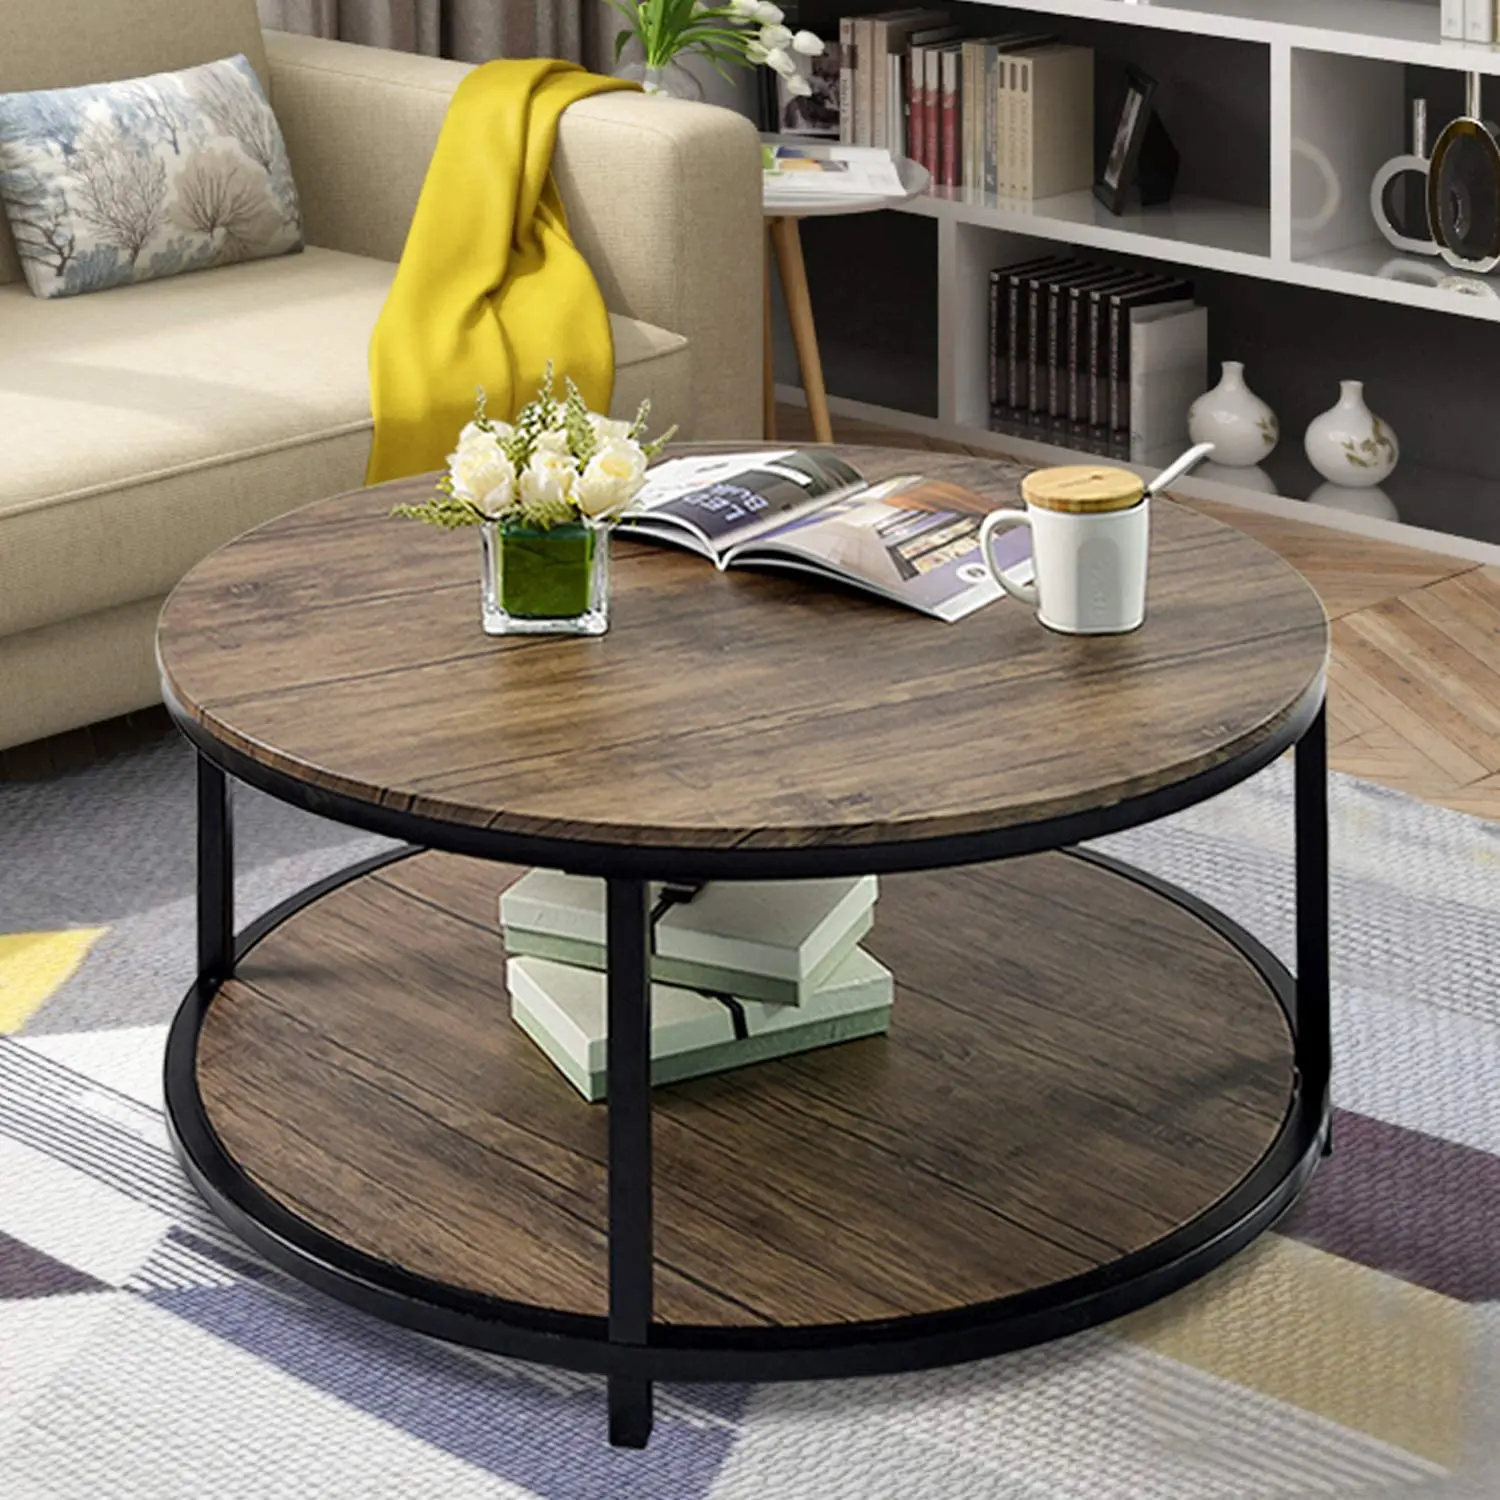 圆形茶几质朴木质表面顶级工业沙发桌客厅现代设计